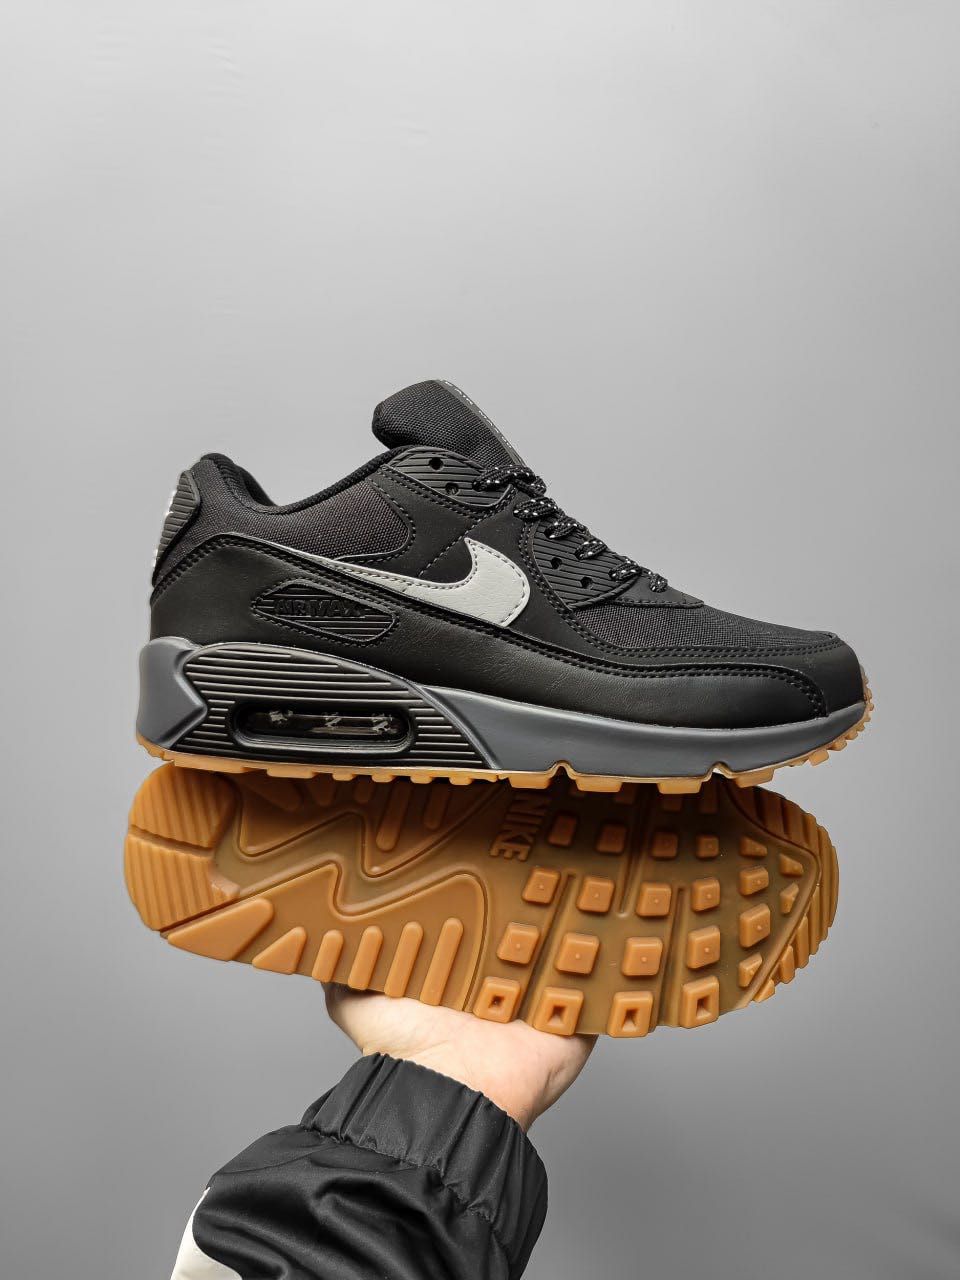 Кросівки Nike Air Max 90 Black Gum, кросовки Найк Аір Макс 90 чорні